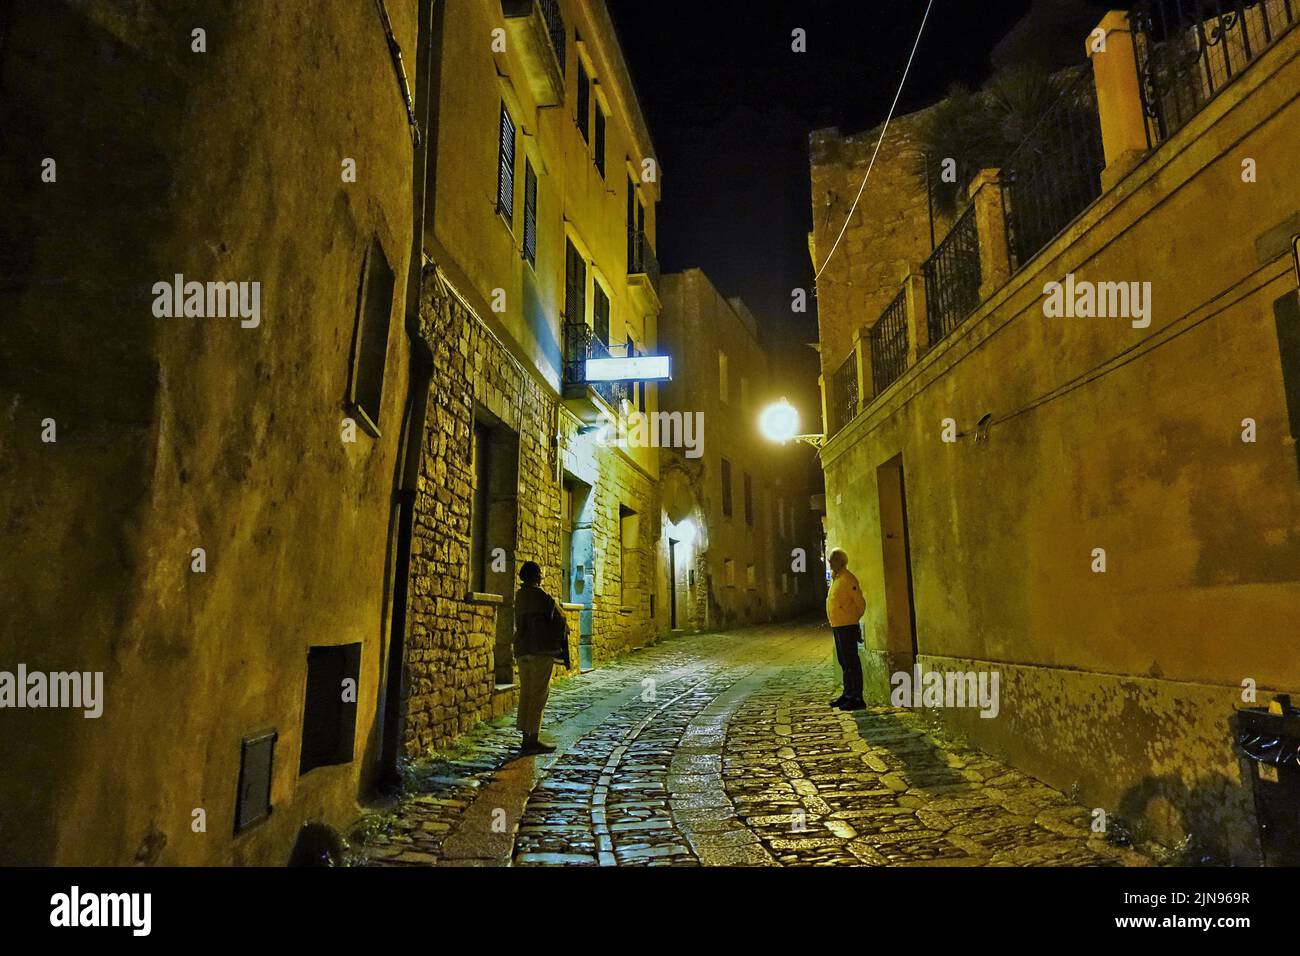 Narrow street at night, Erice, Trapani, Sicily, Italy, Europe Stock Photo